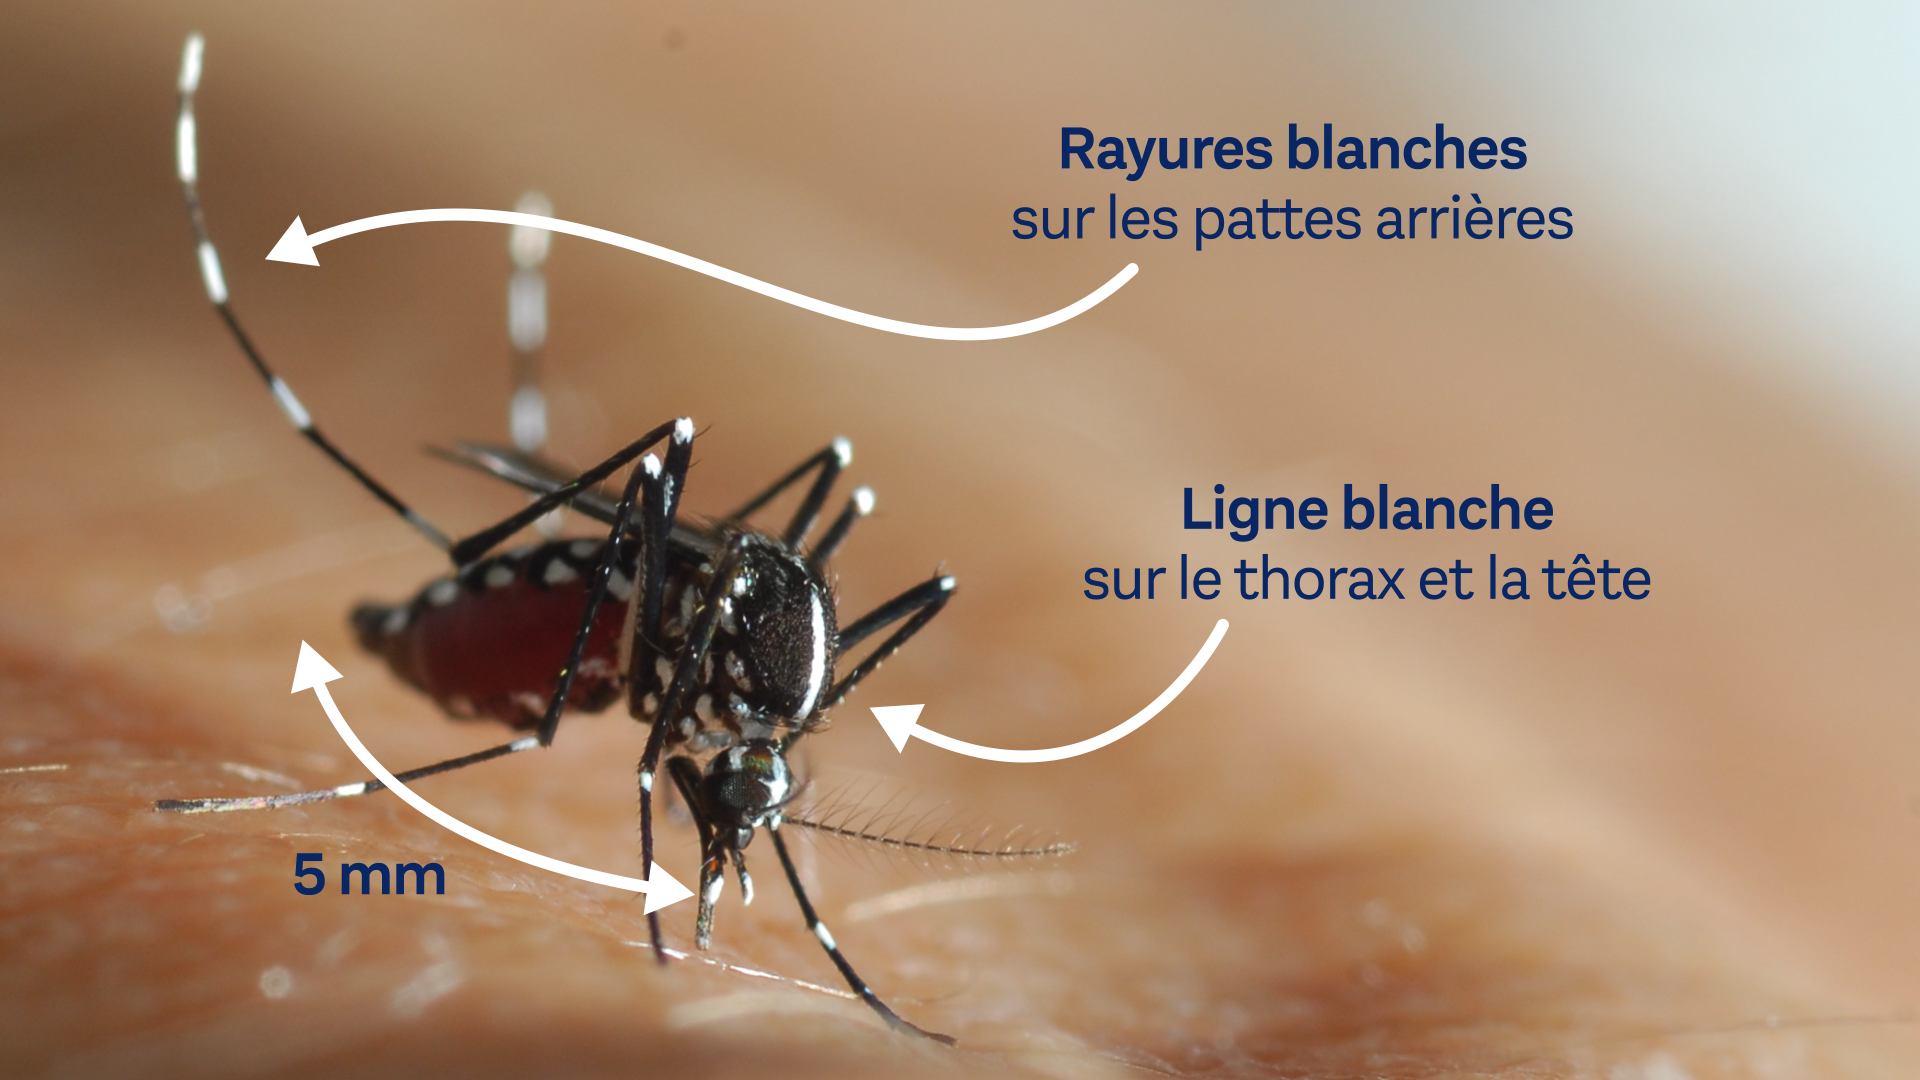 Actions de lutte anti moustique tigre : “Check list” et courrier de l’ARS